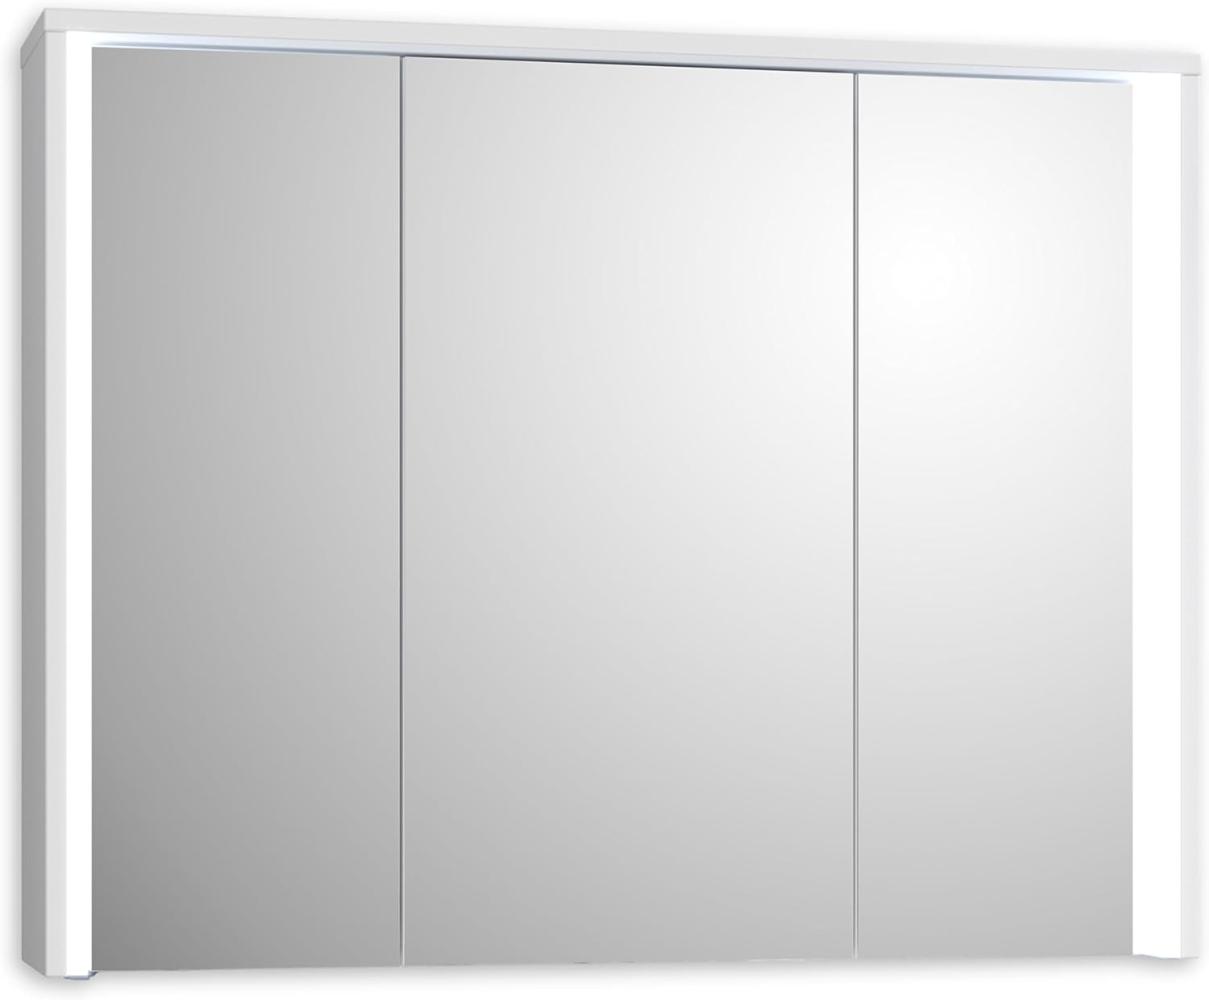 Stella Trading FIVE Spiegelschrank Bad mit LED-Beleuchtung in Weiß - Badezimmerspiegel Schrank mit viel Stauraum - 86 x 68 x 17,5 cm (B/H/T) Bild 1